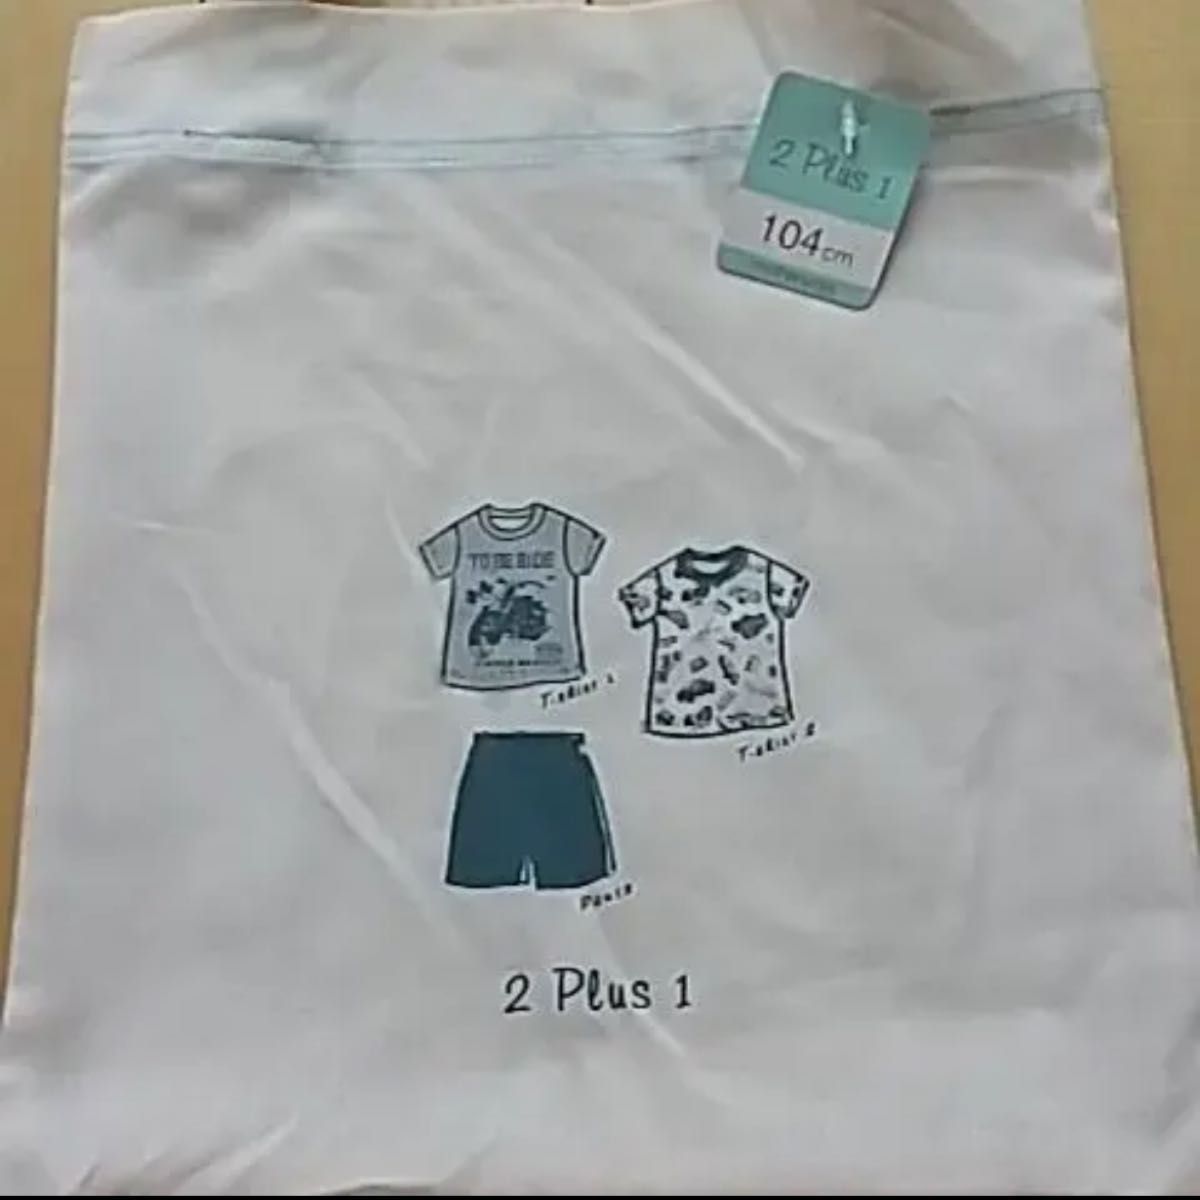 【新品・未使用】マザウェイズ☆パジャマ☆サイズ104☆2PLUS1☆収納袋付き